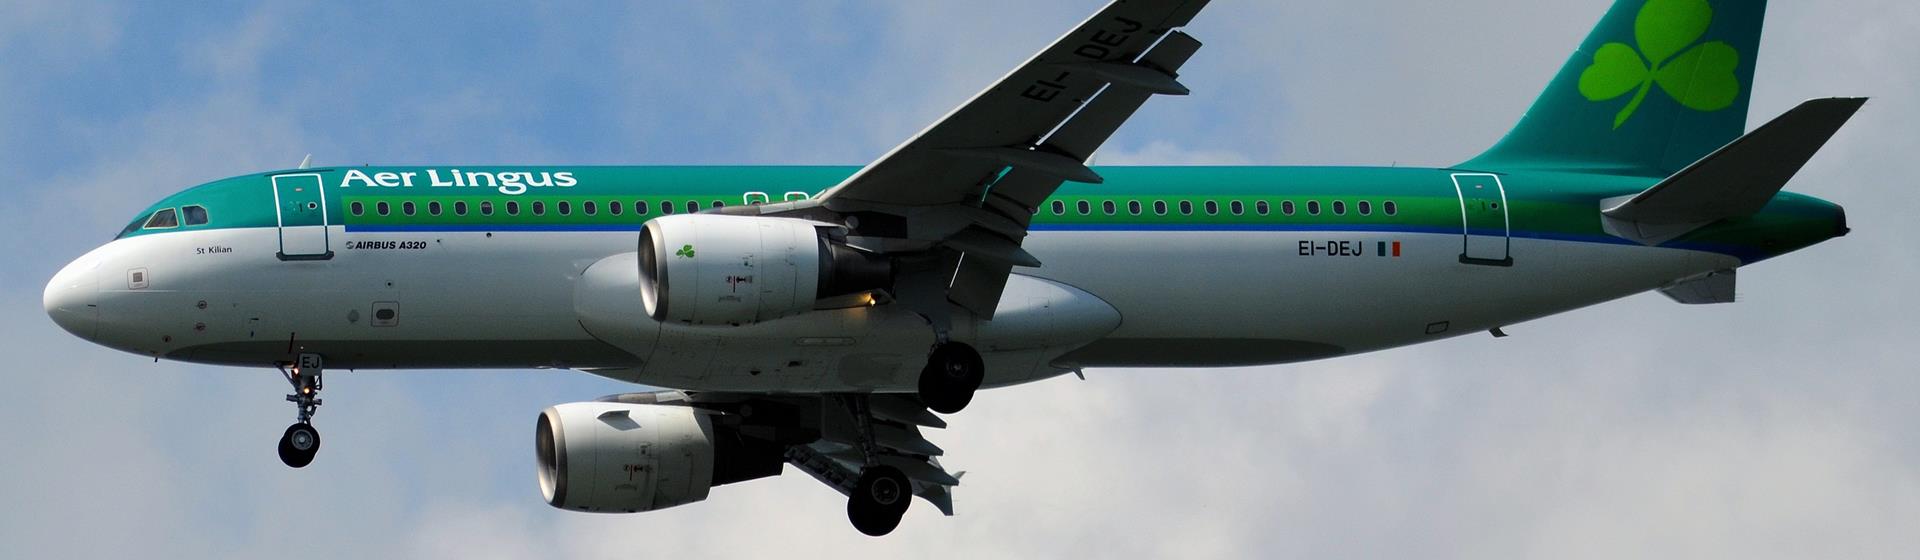 Aer Lingus Holidays